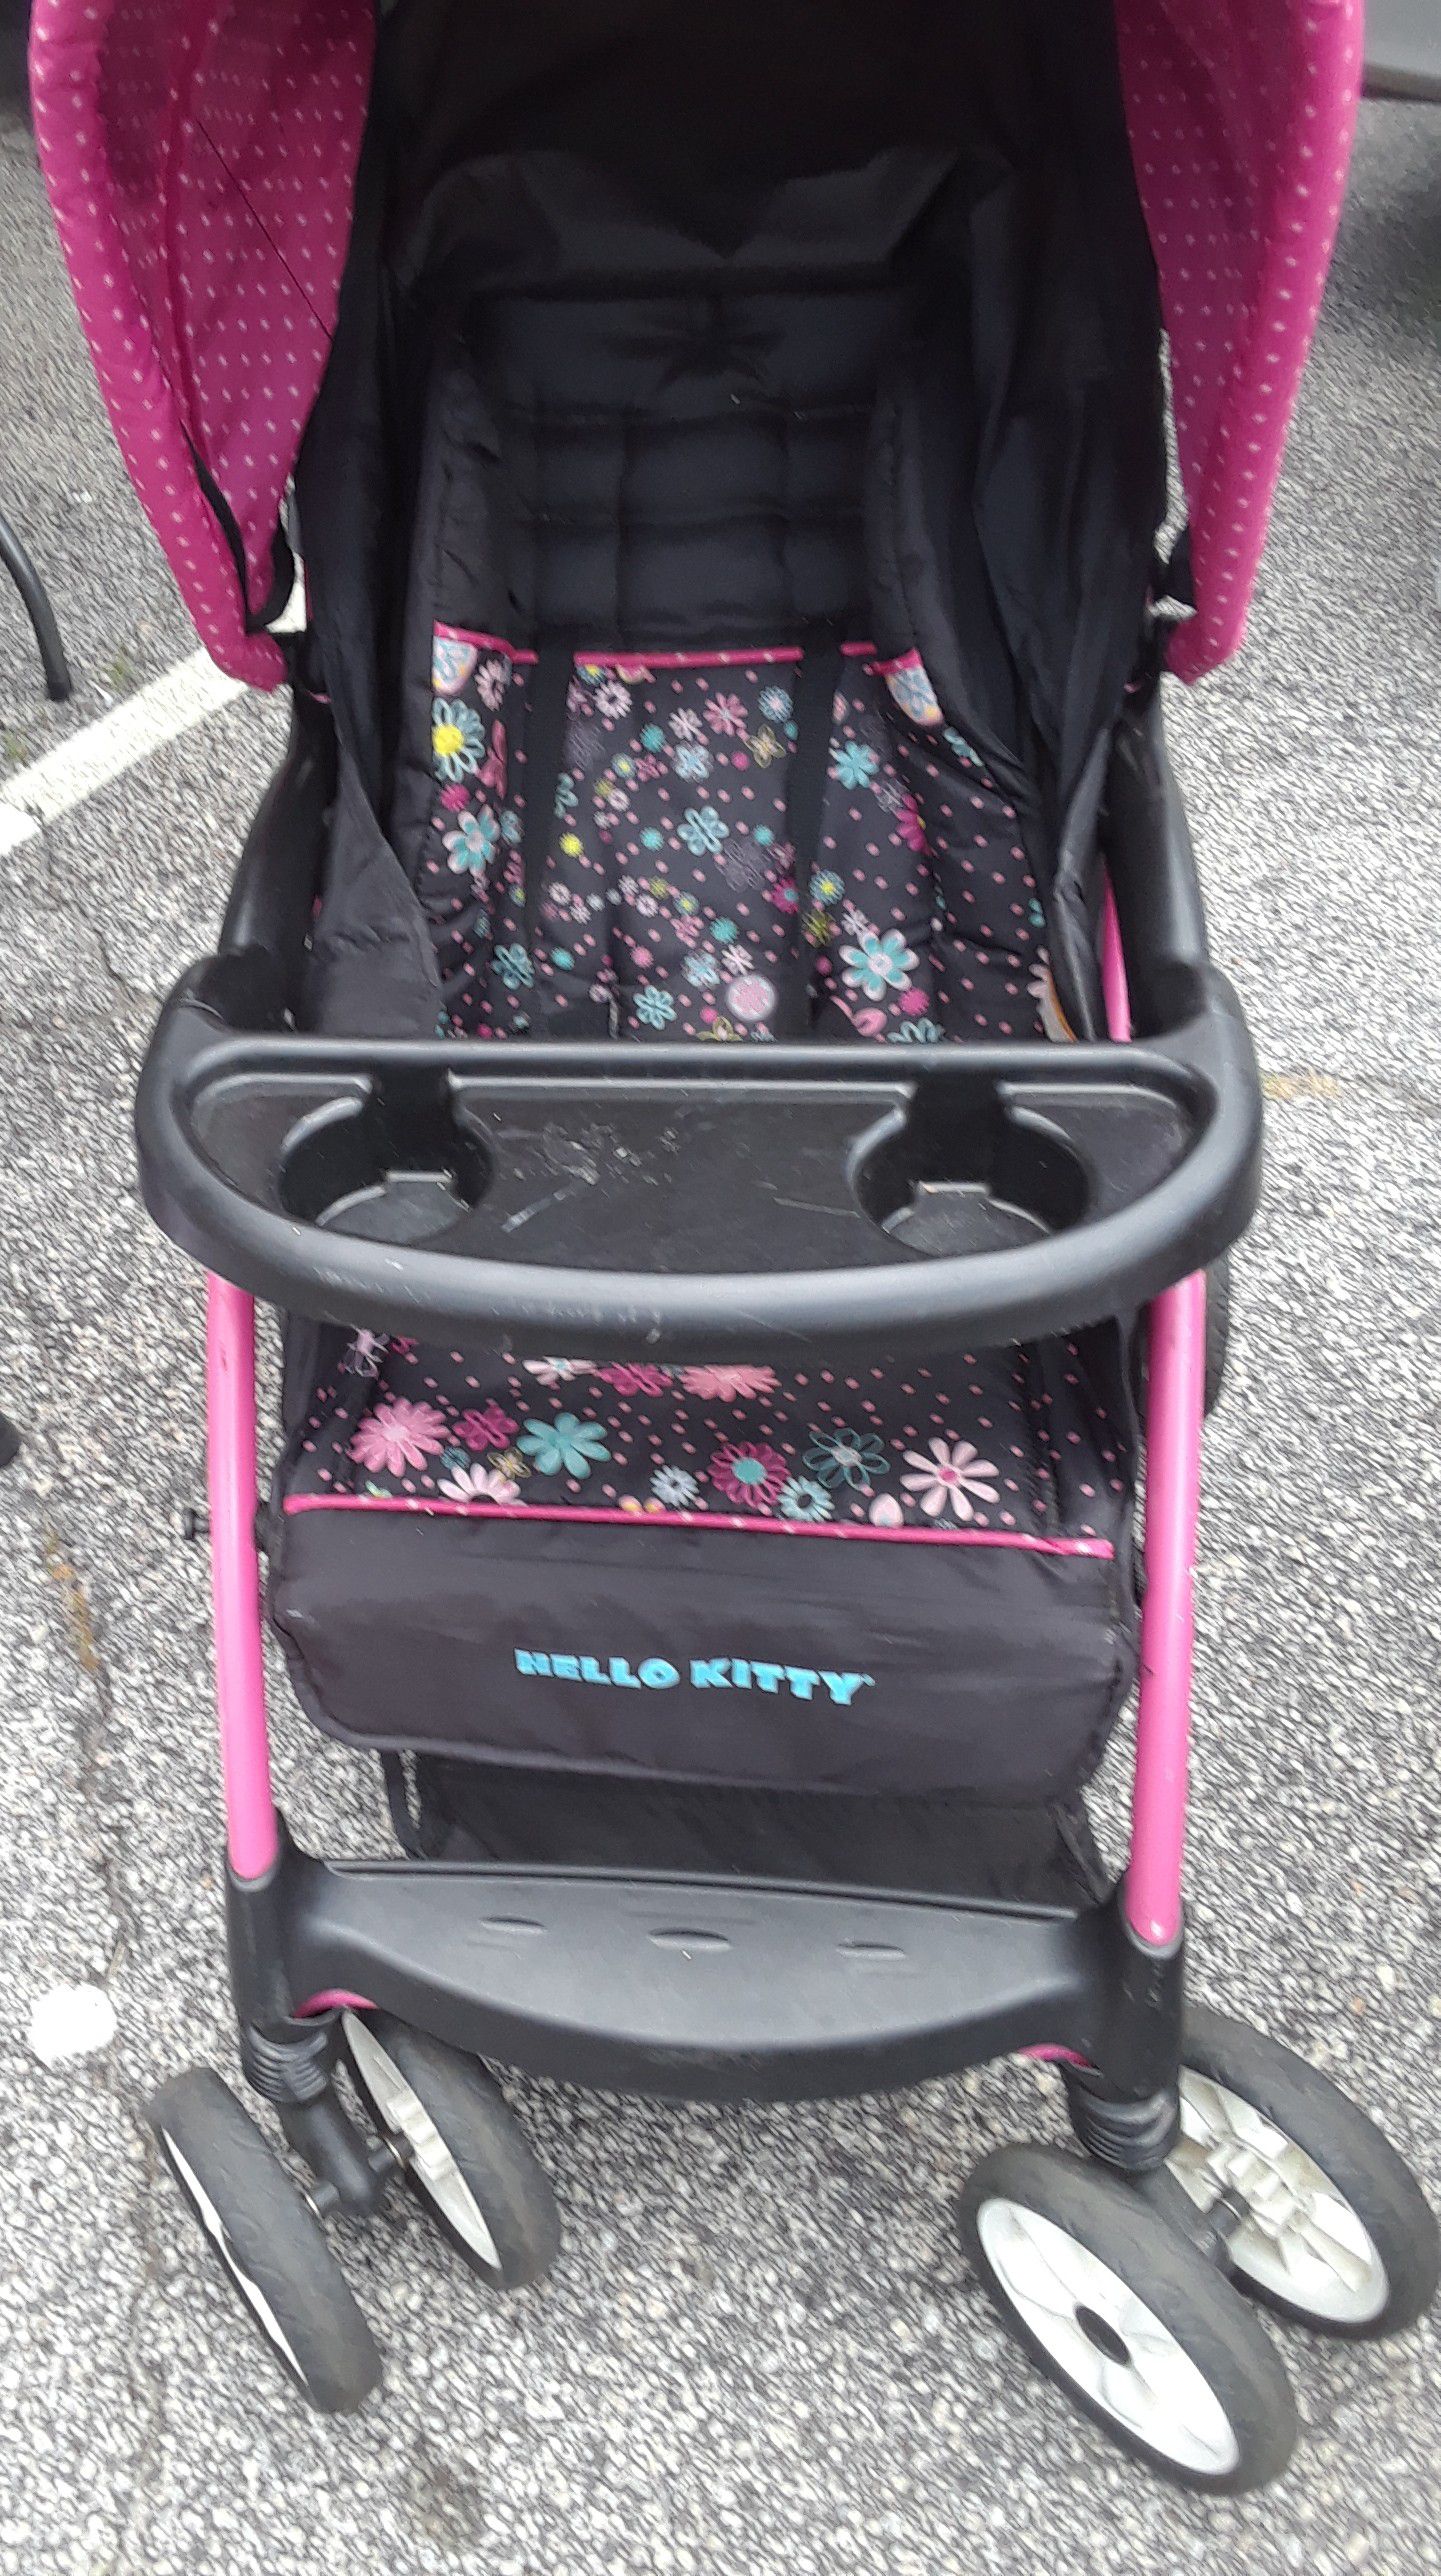 Hello kitty stroller